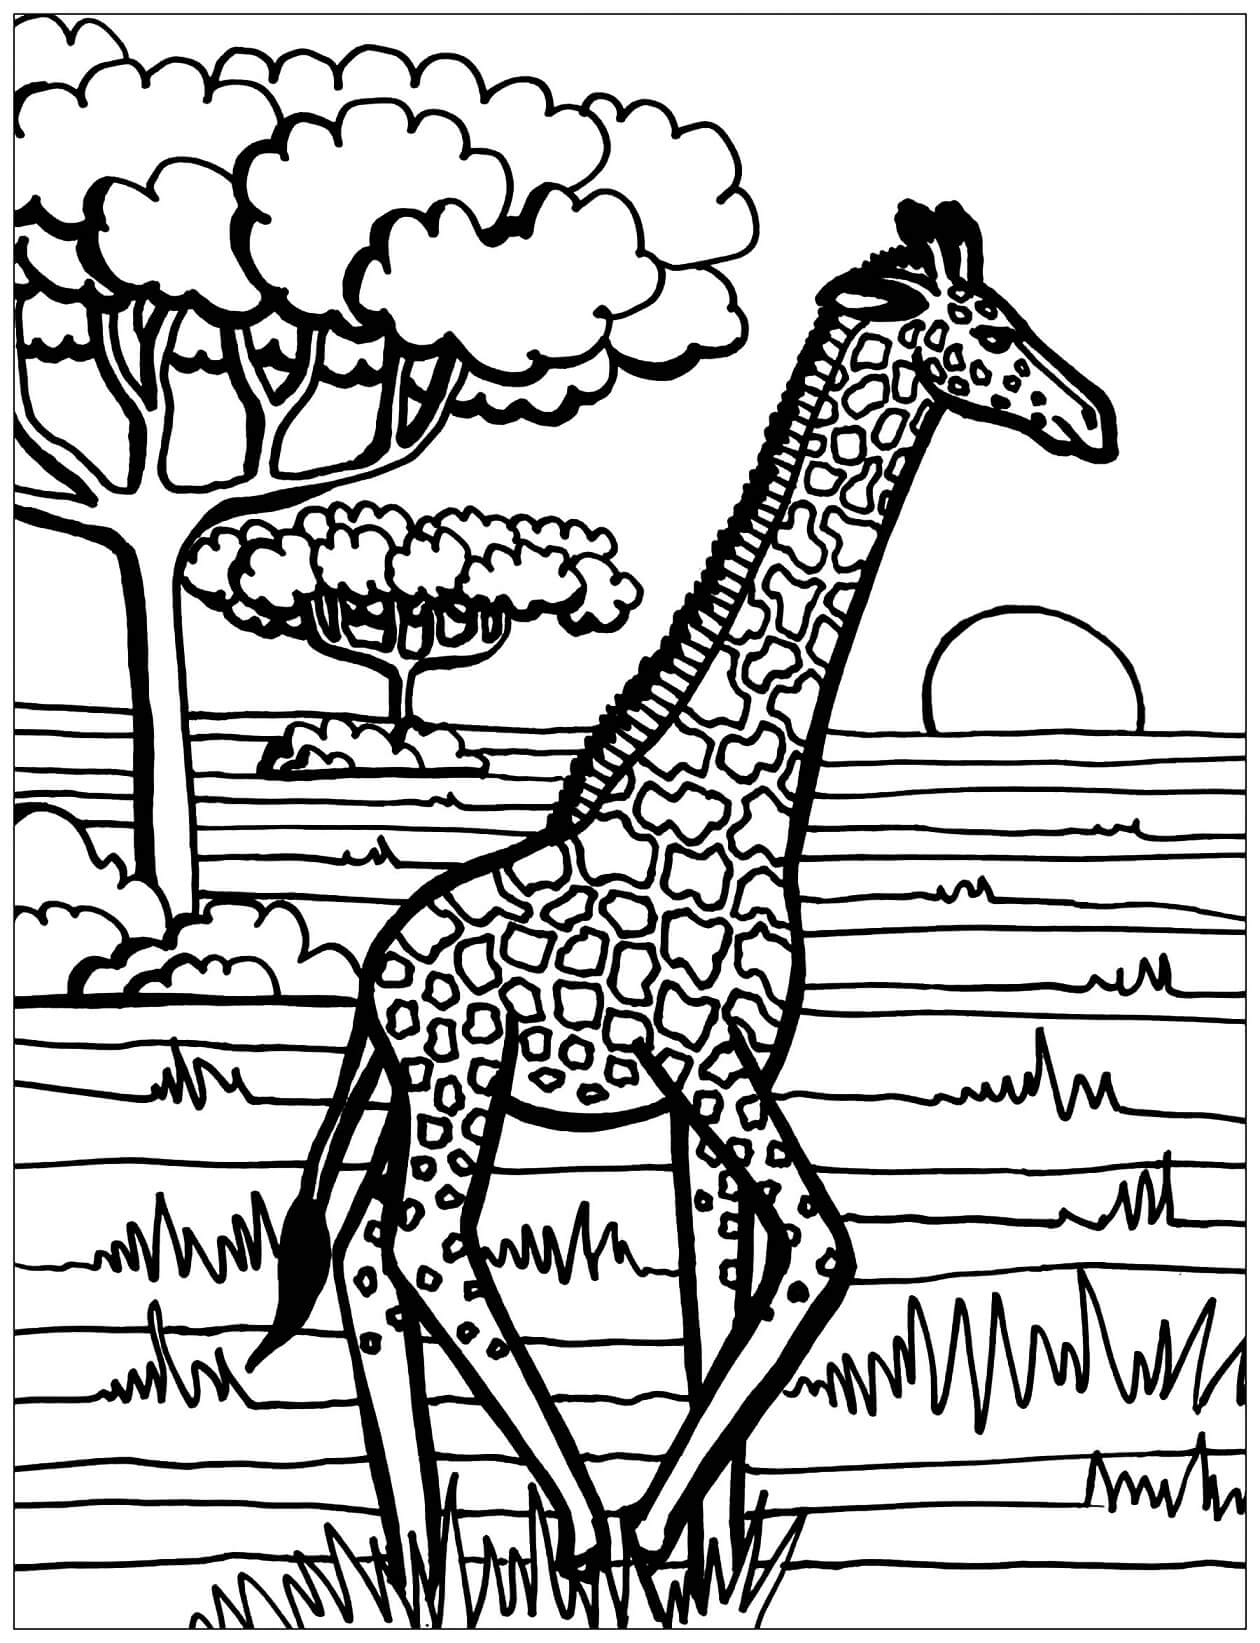 Mandala Giraffe Coloring Page - Sheet 10 Mandalas